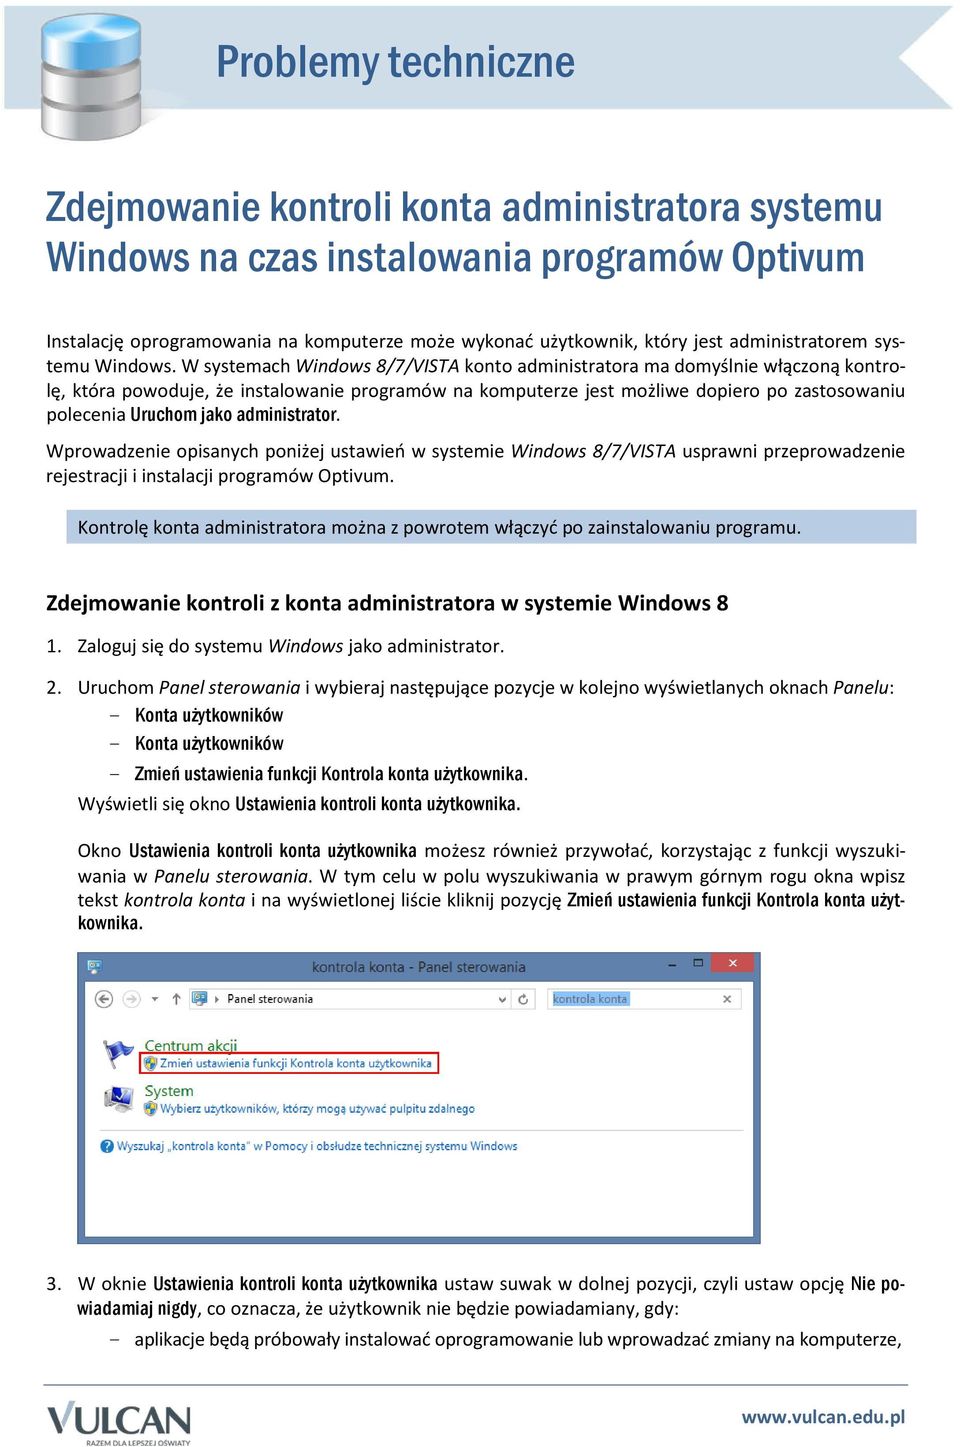 W systemach Windows 8/7/VISTA konto administratora ma domyślnie włączoną kontrolę, która powoduje, że instalowanie programów na komputerze jest możliwe dopiero po zastosowaniu polecenia Uruchom jako